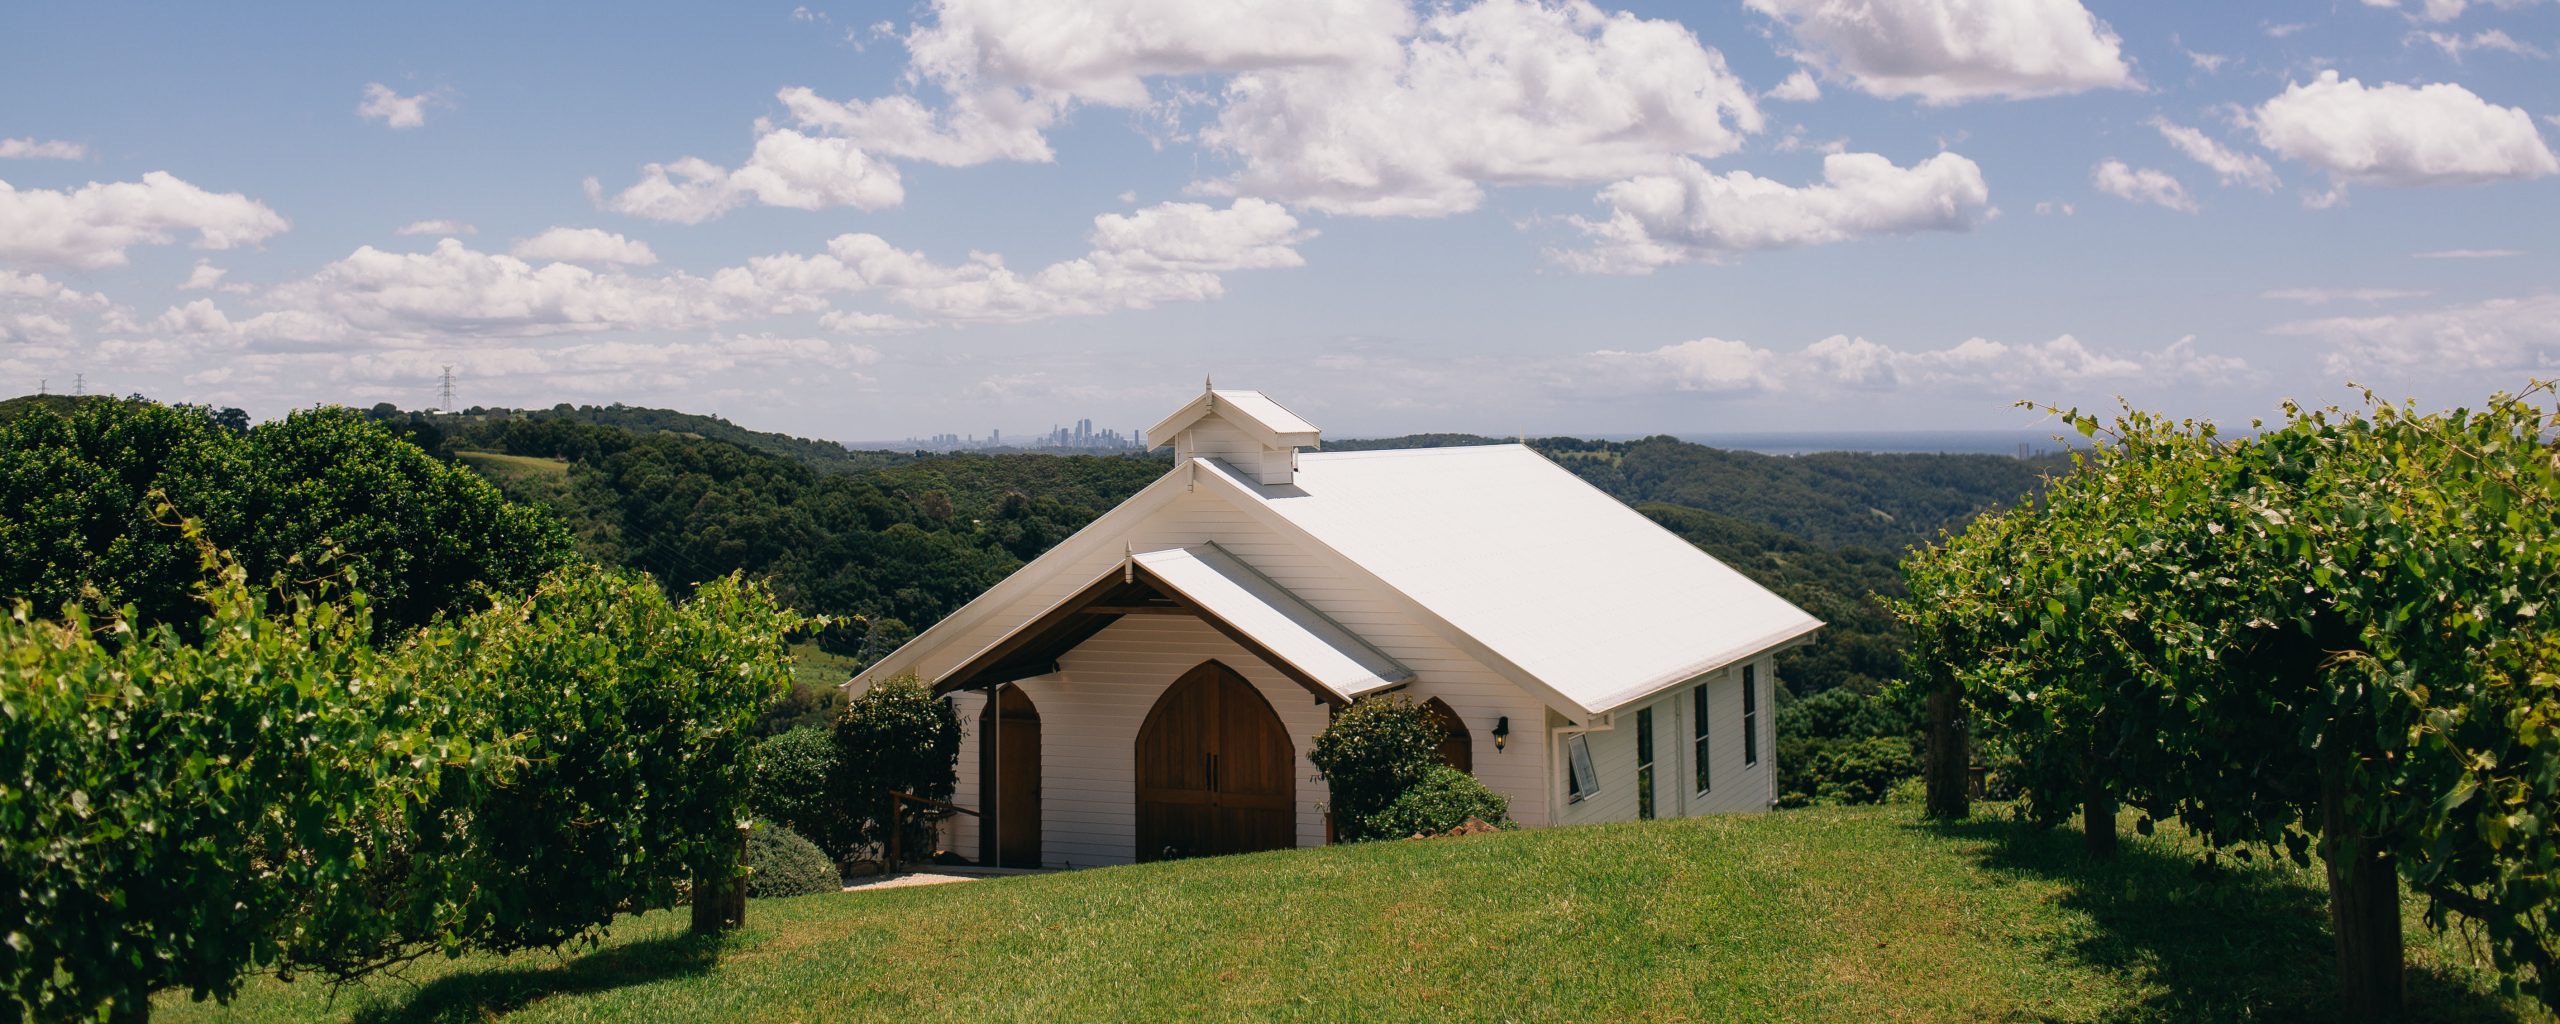 chapel wedding venue in australia, near brisbane, byron bay, gold coast